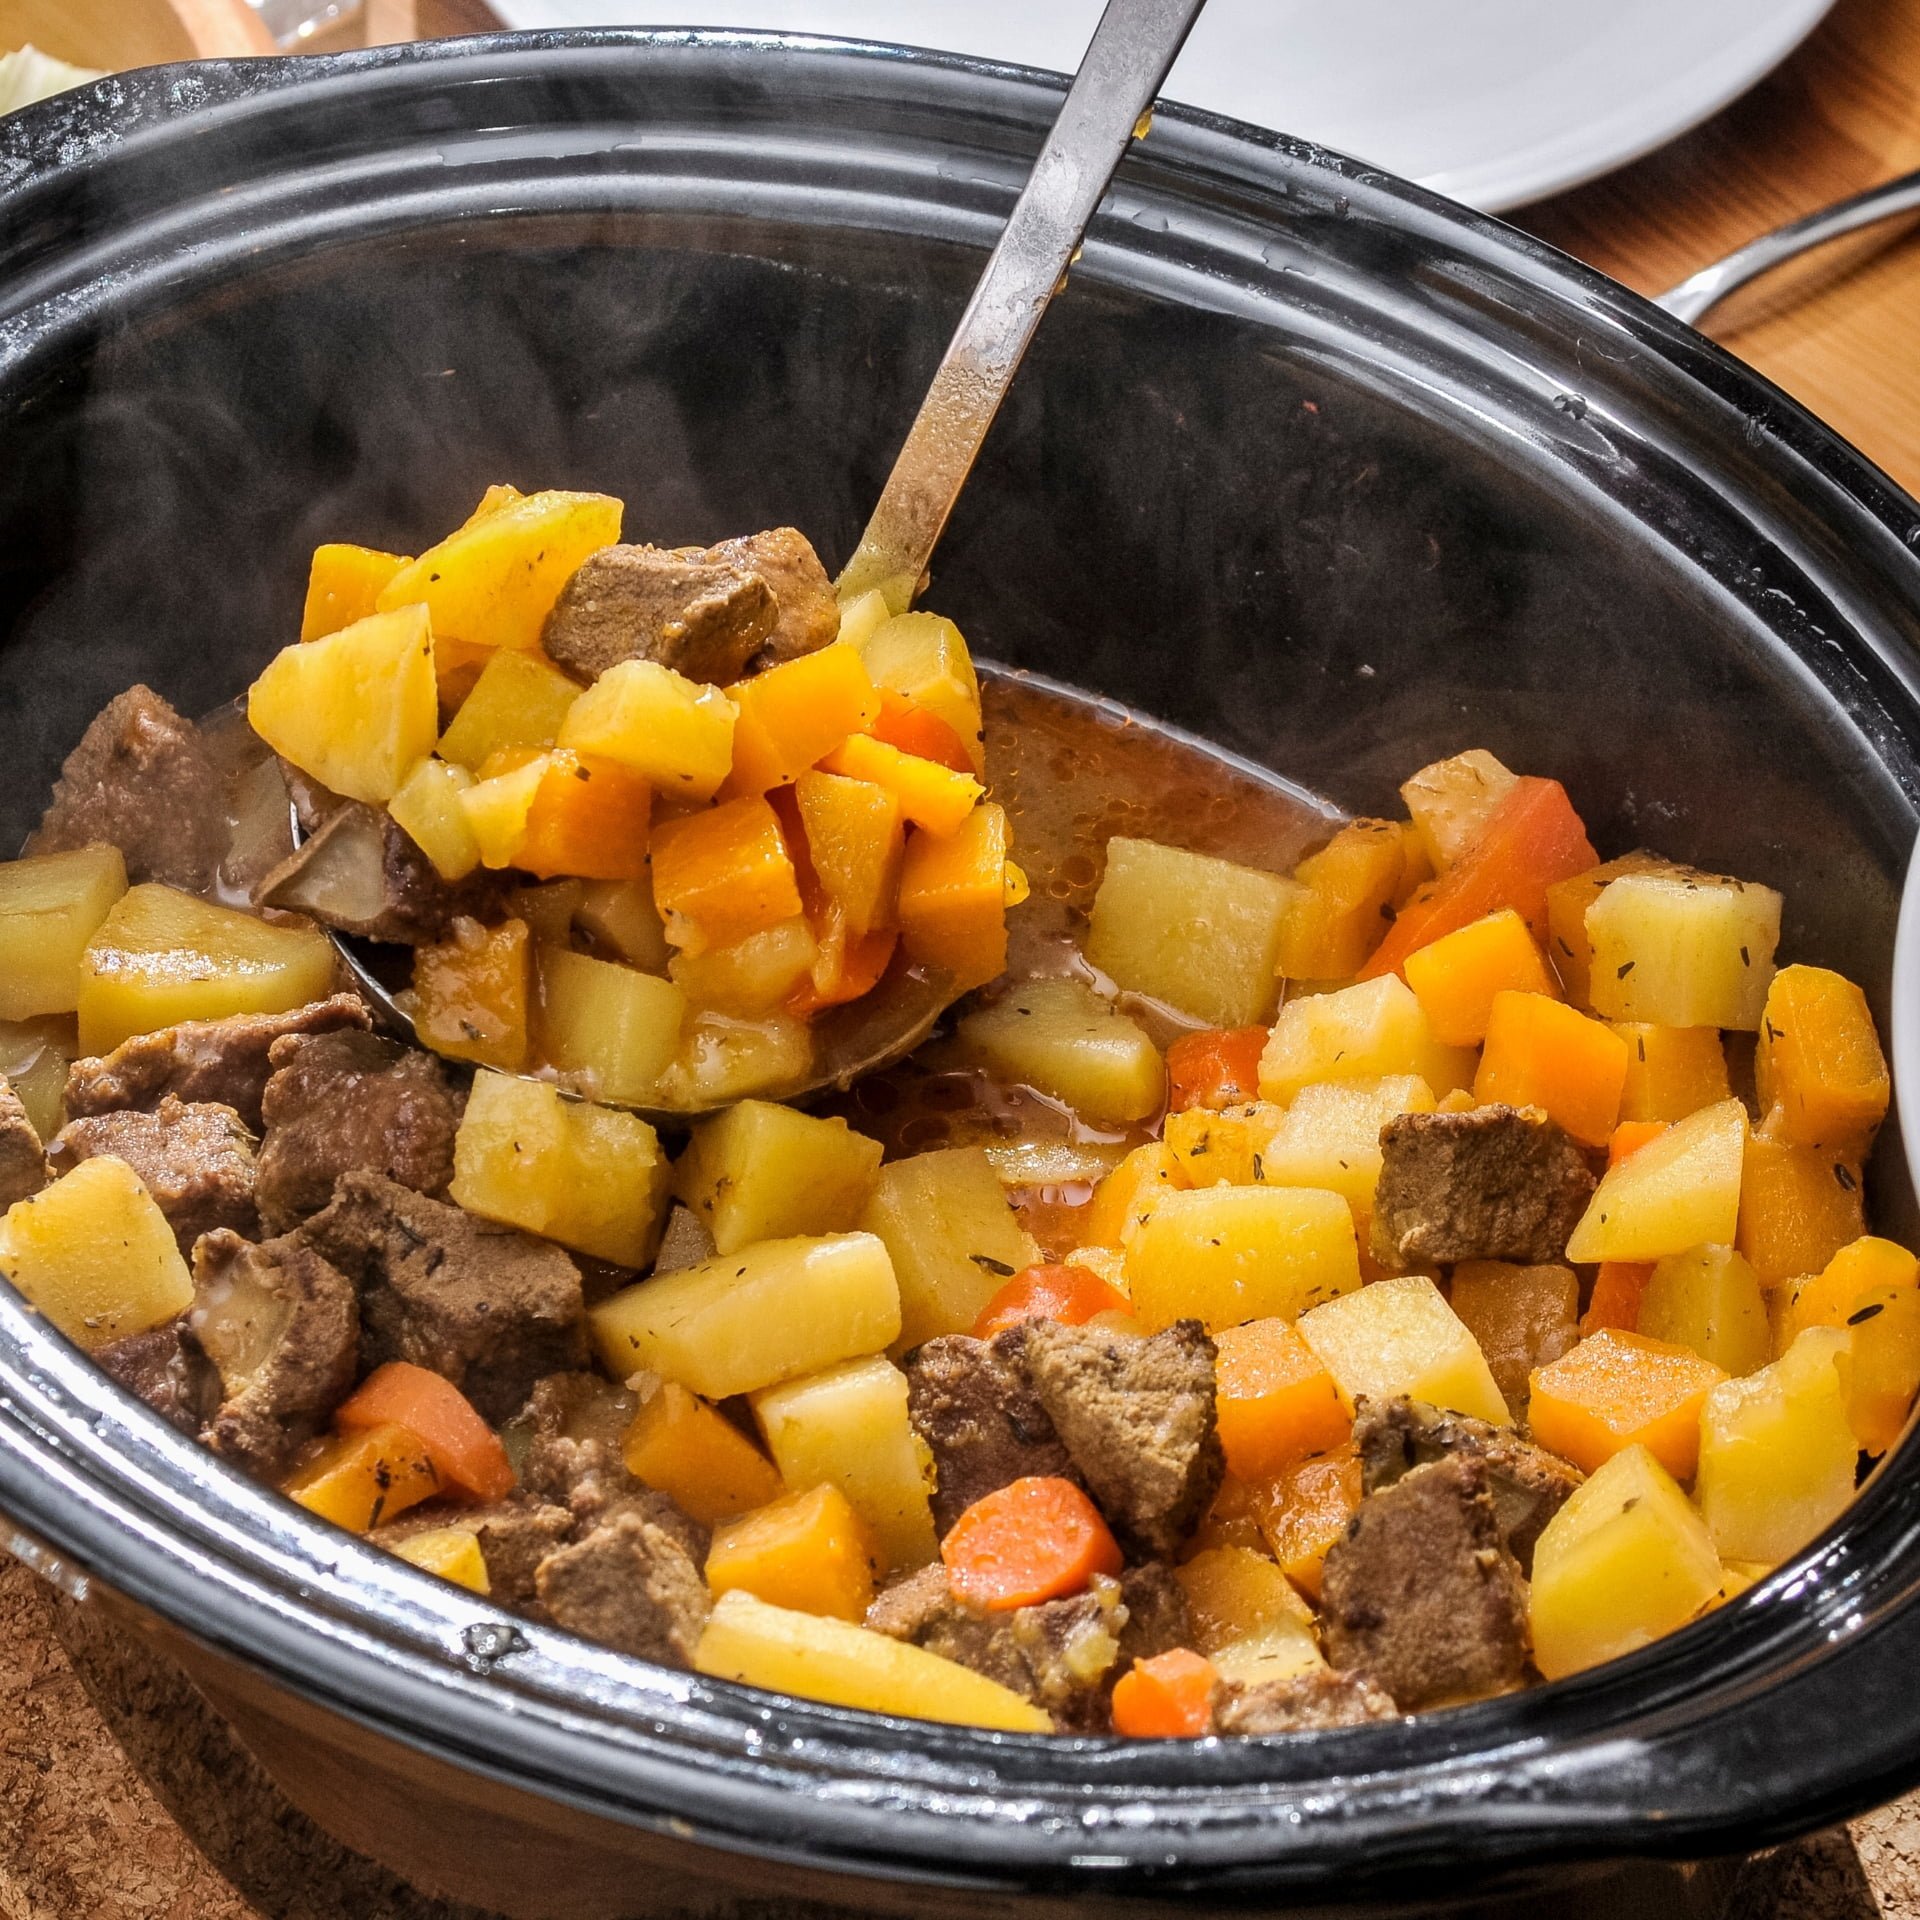 Crock pot recipes and slow cooker meals